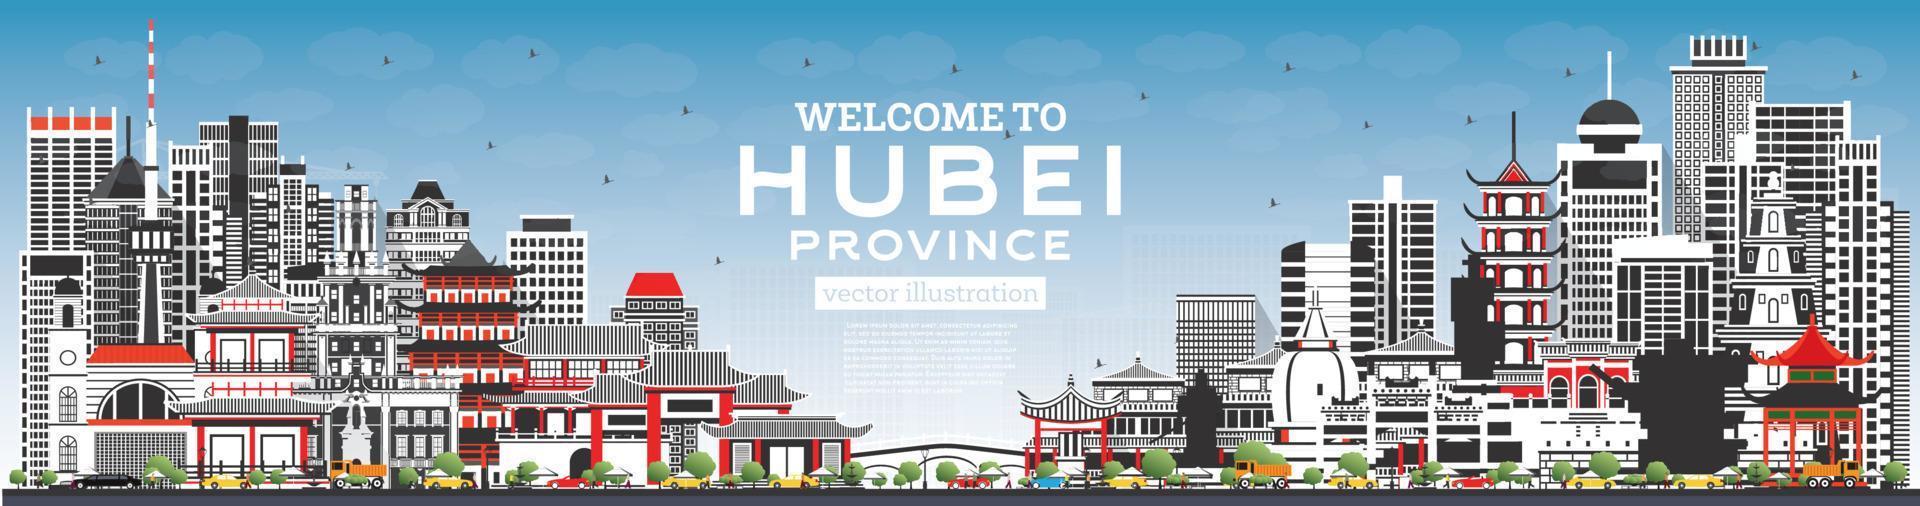 Välkommen till hubei provins i Kina. stad horisont med grå byggnader och blå himmel. vektor